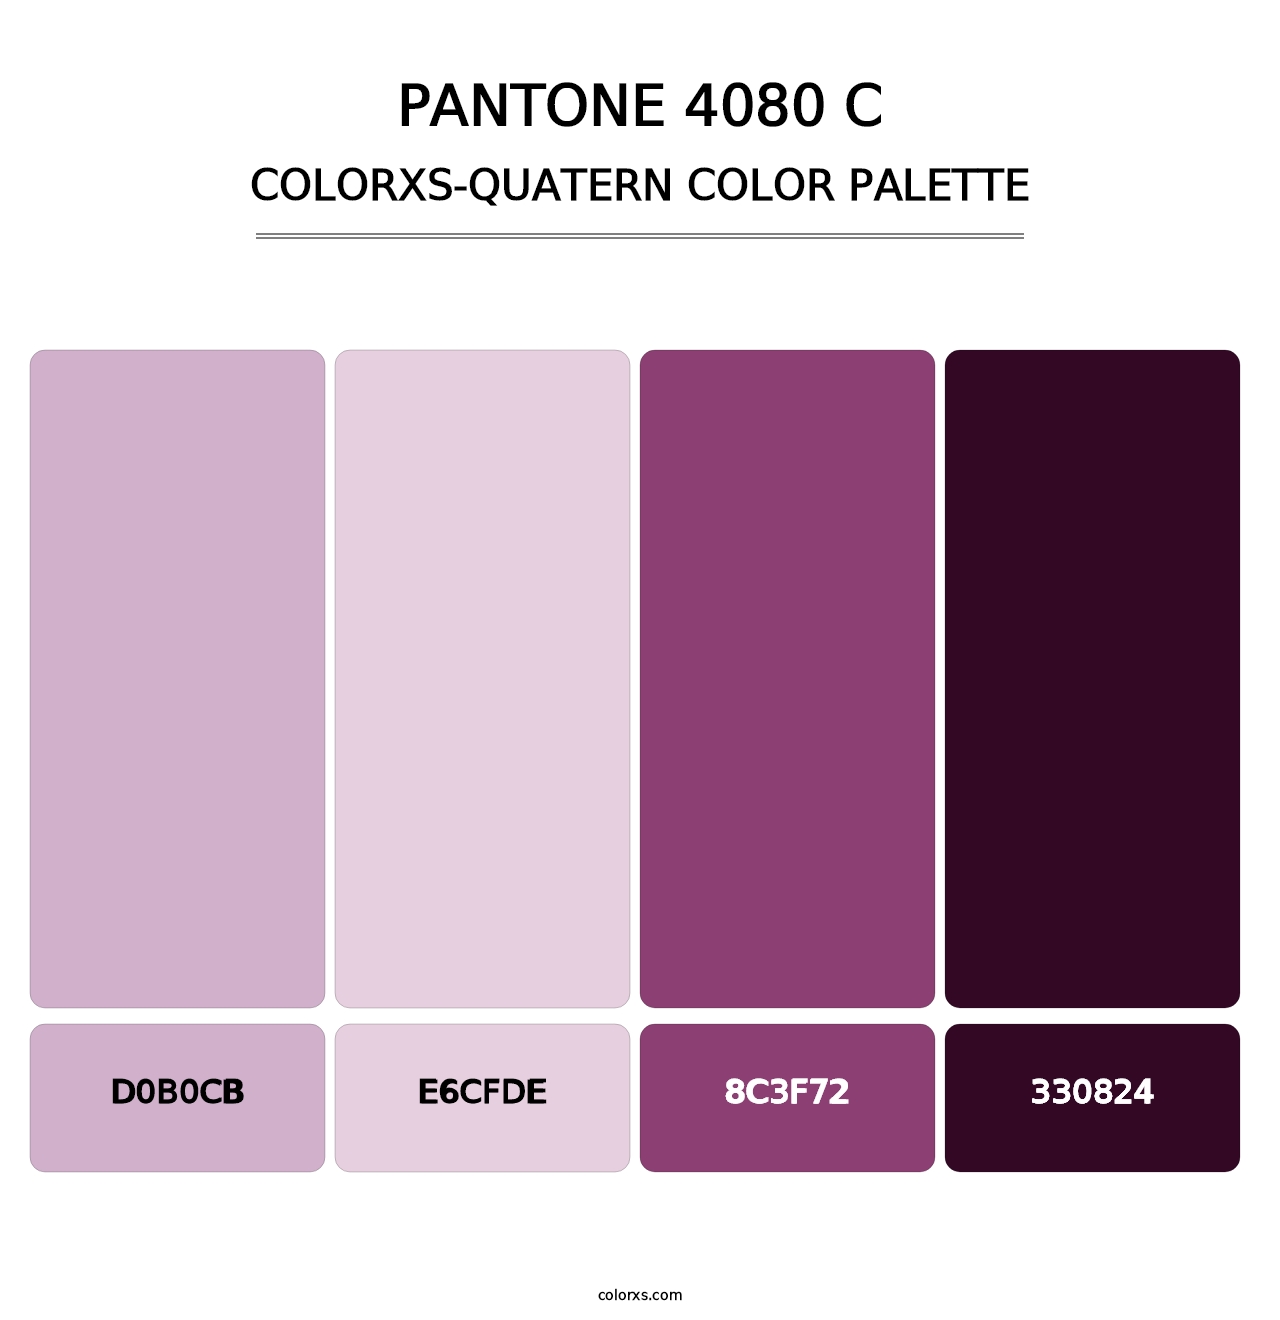 PANTONE 4080 C - Colorxs Quatern Palette